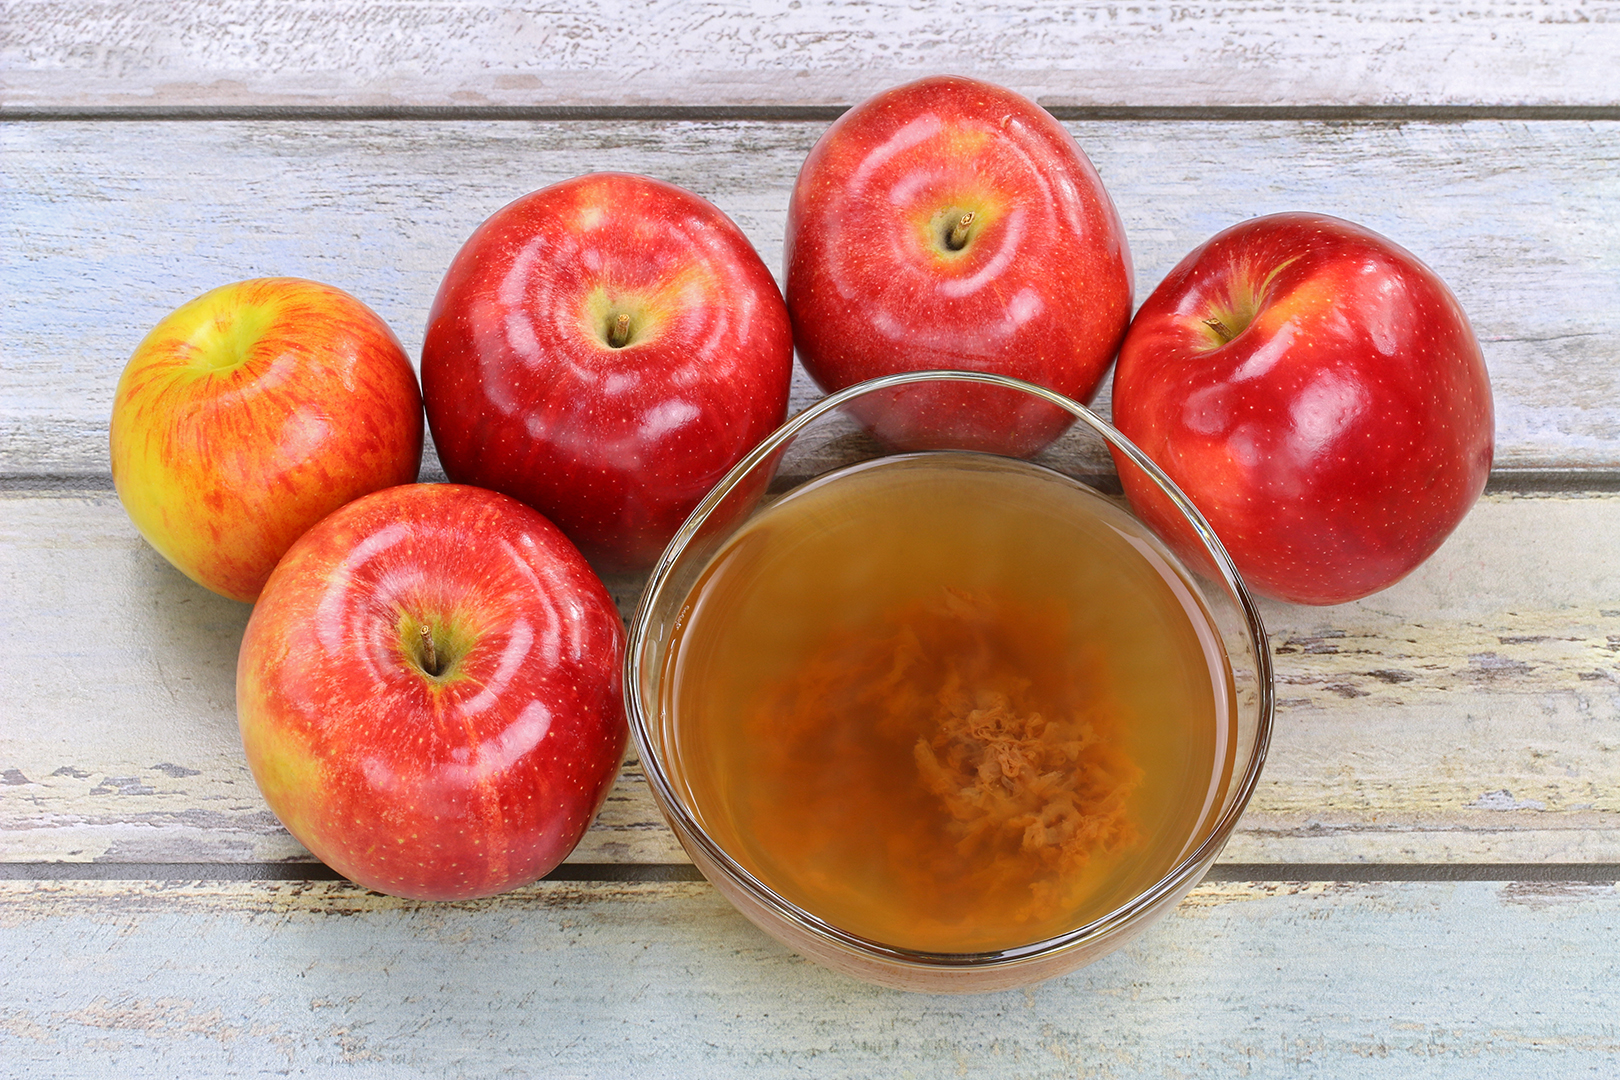 Los principales beneficios del vinagre de manzana para tu salud, según expertos3 min read